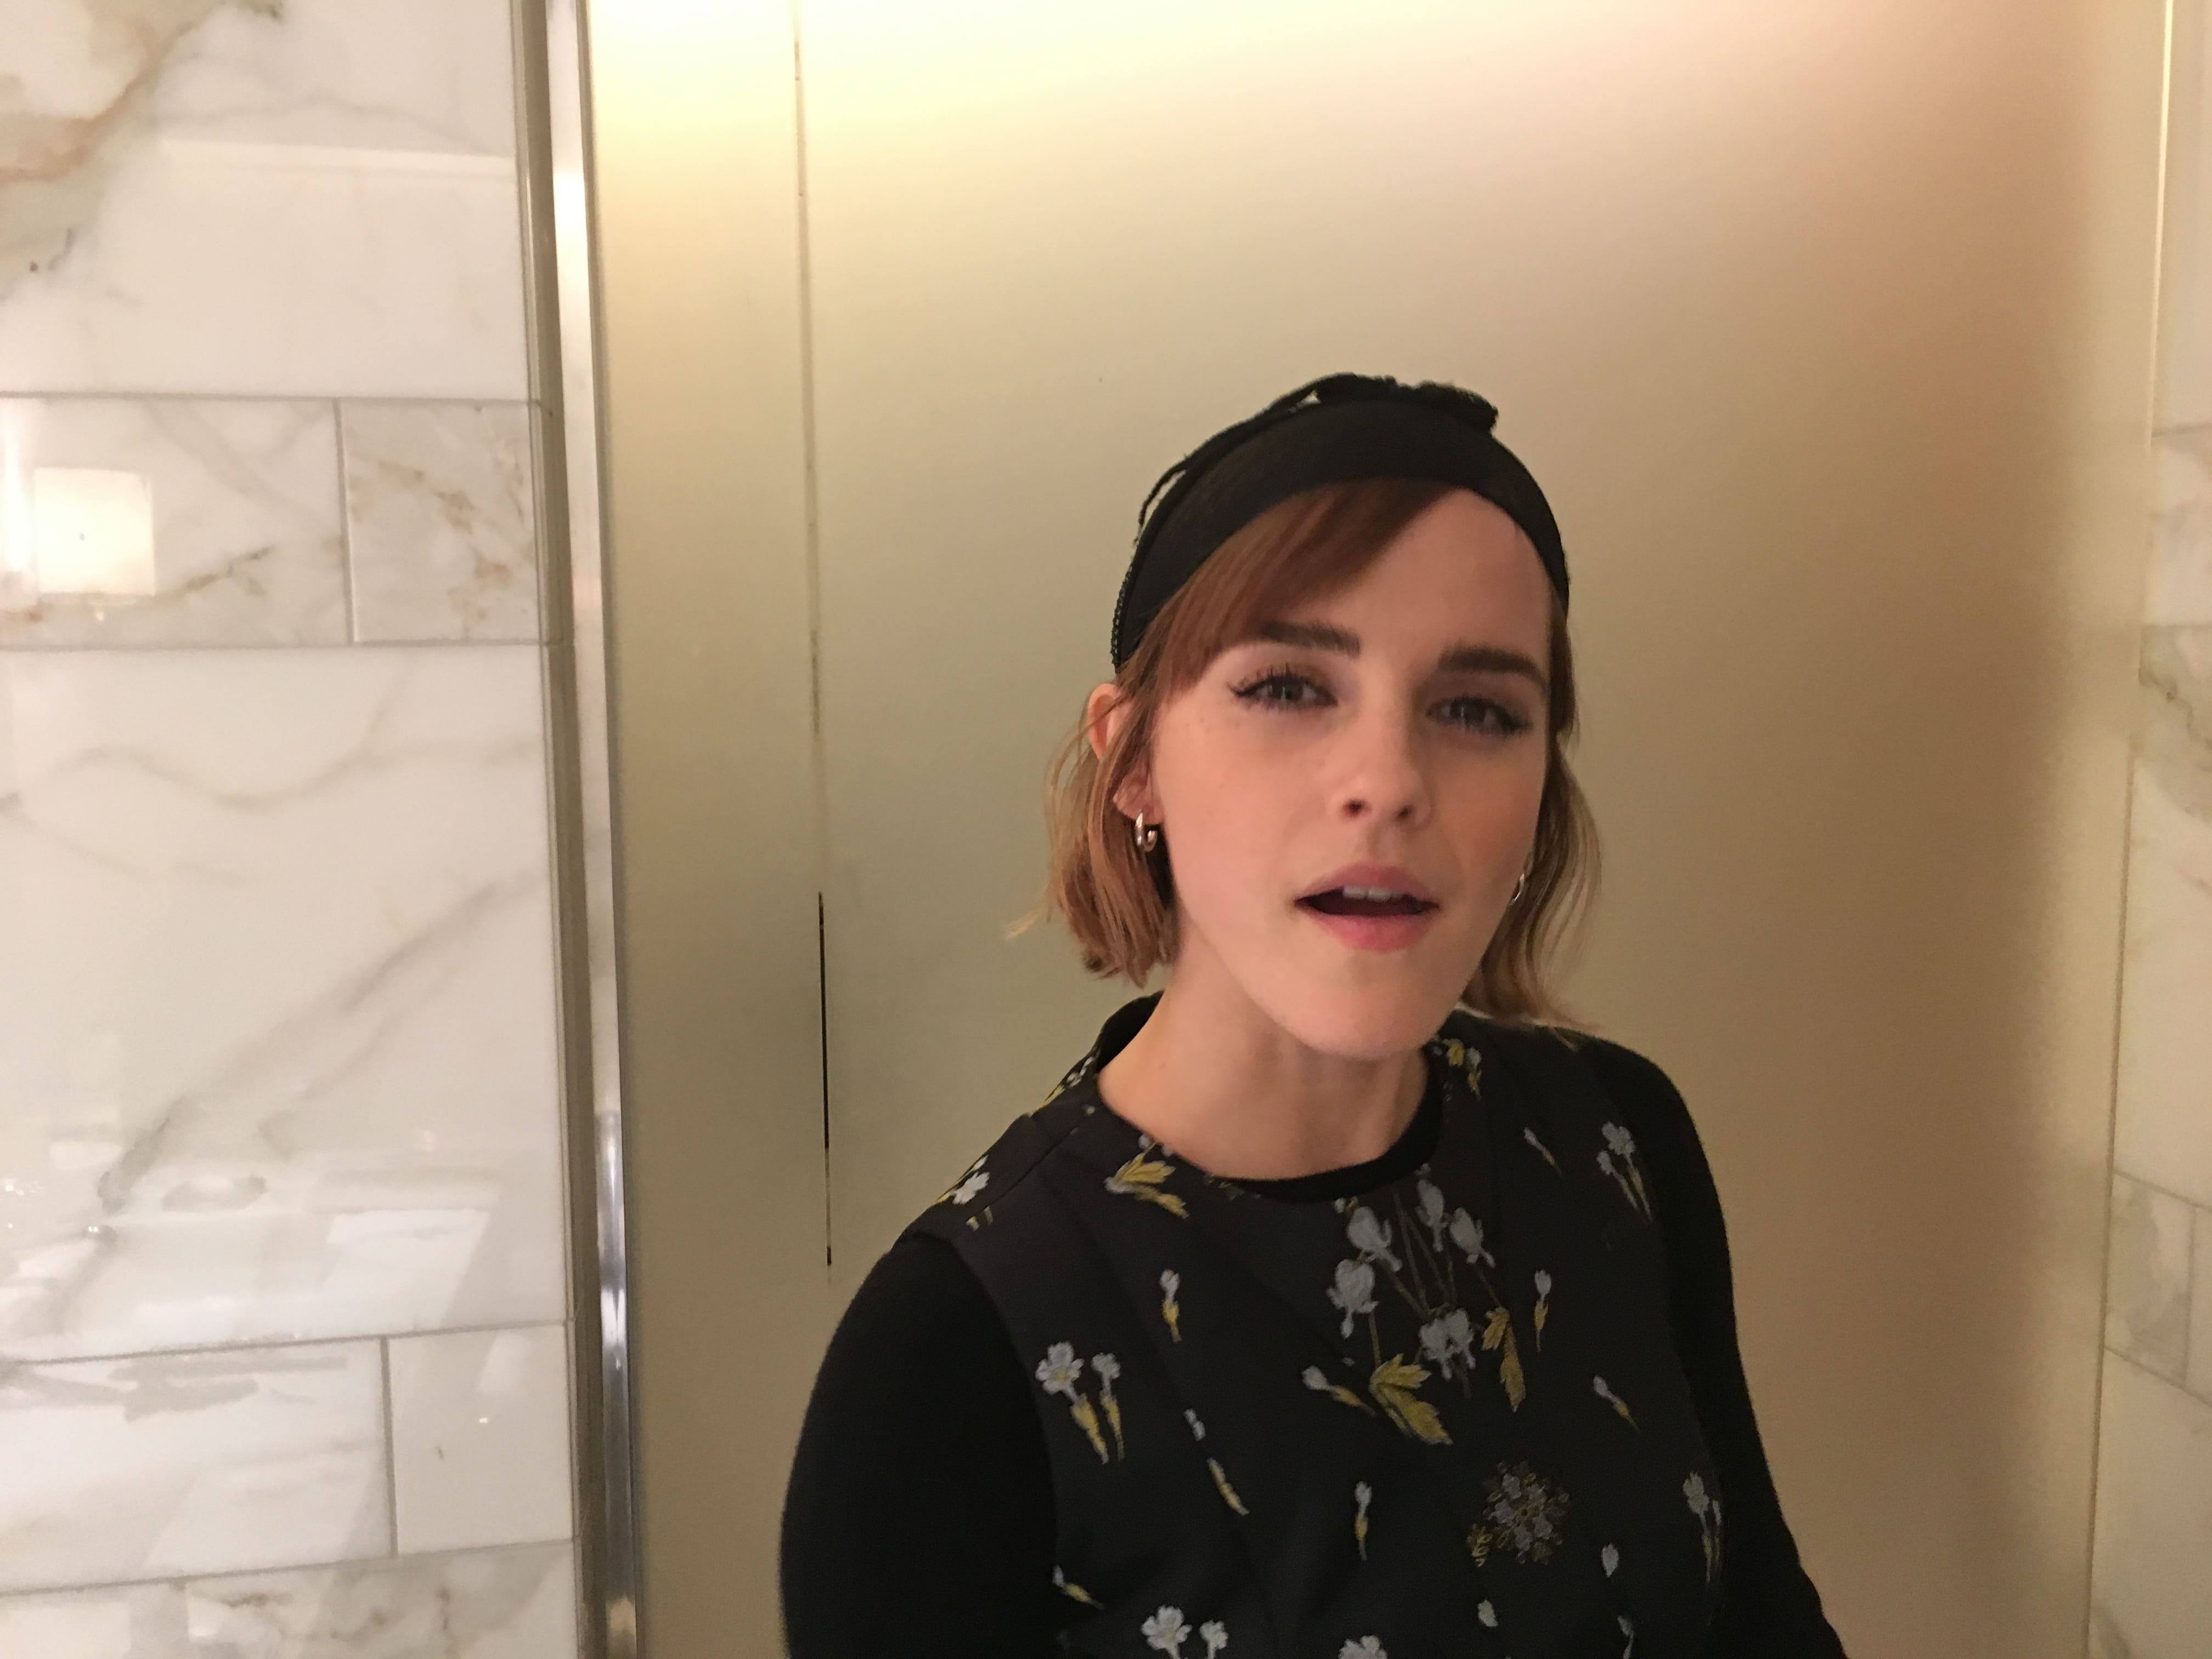 Watson nu emma Emma Watson